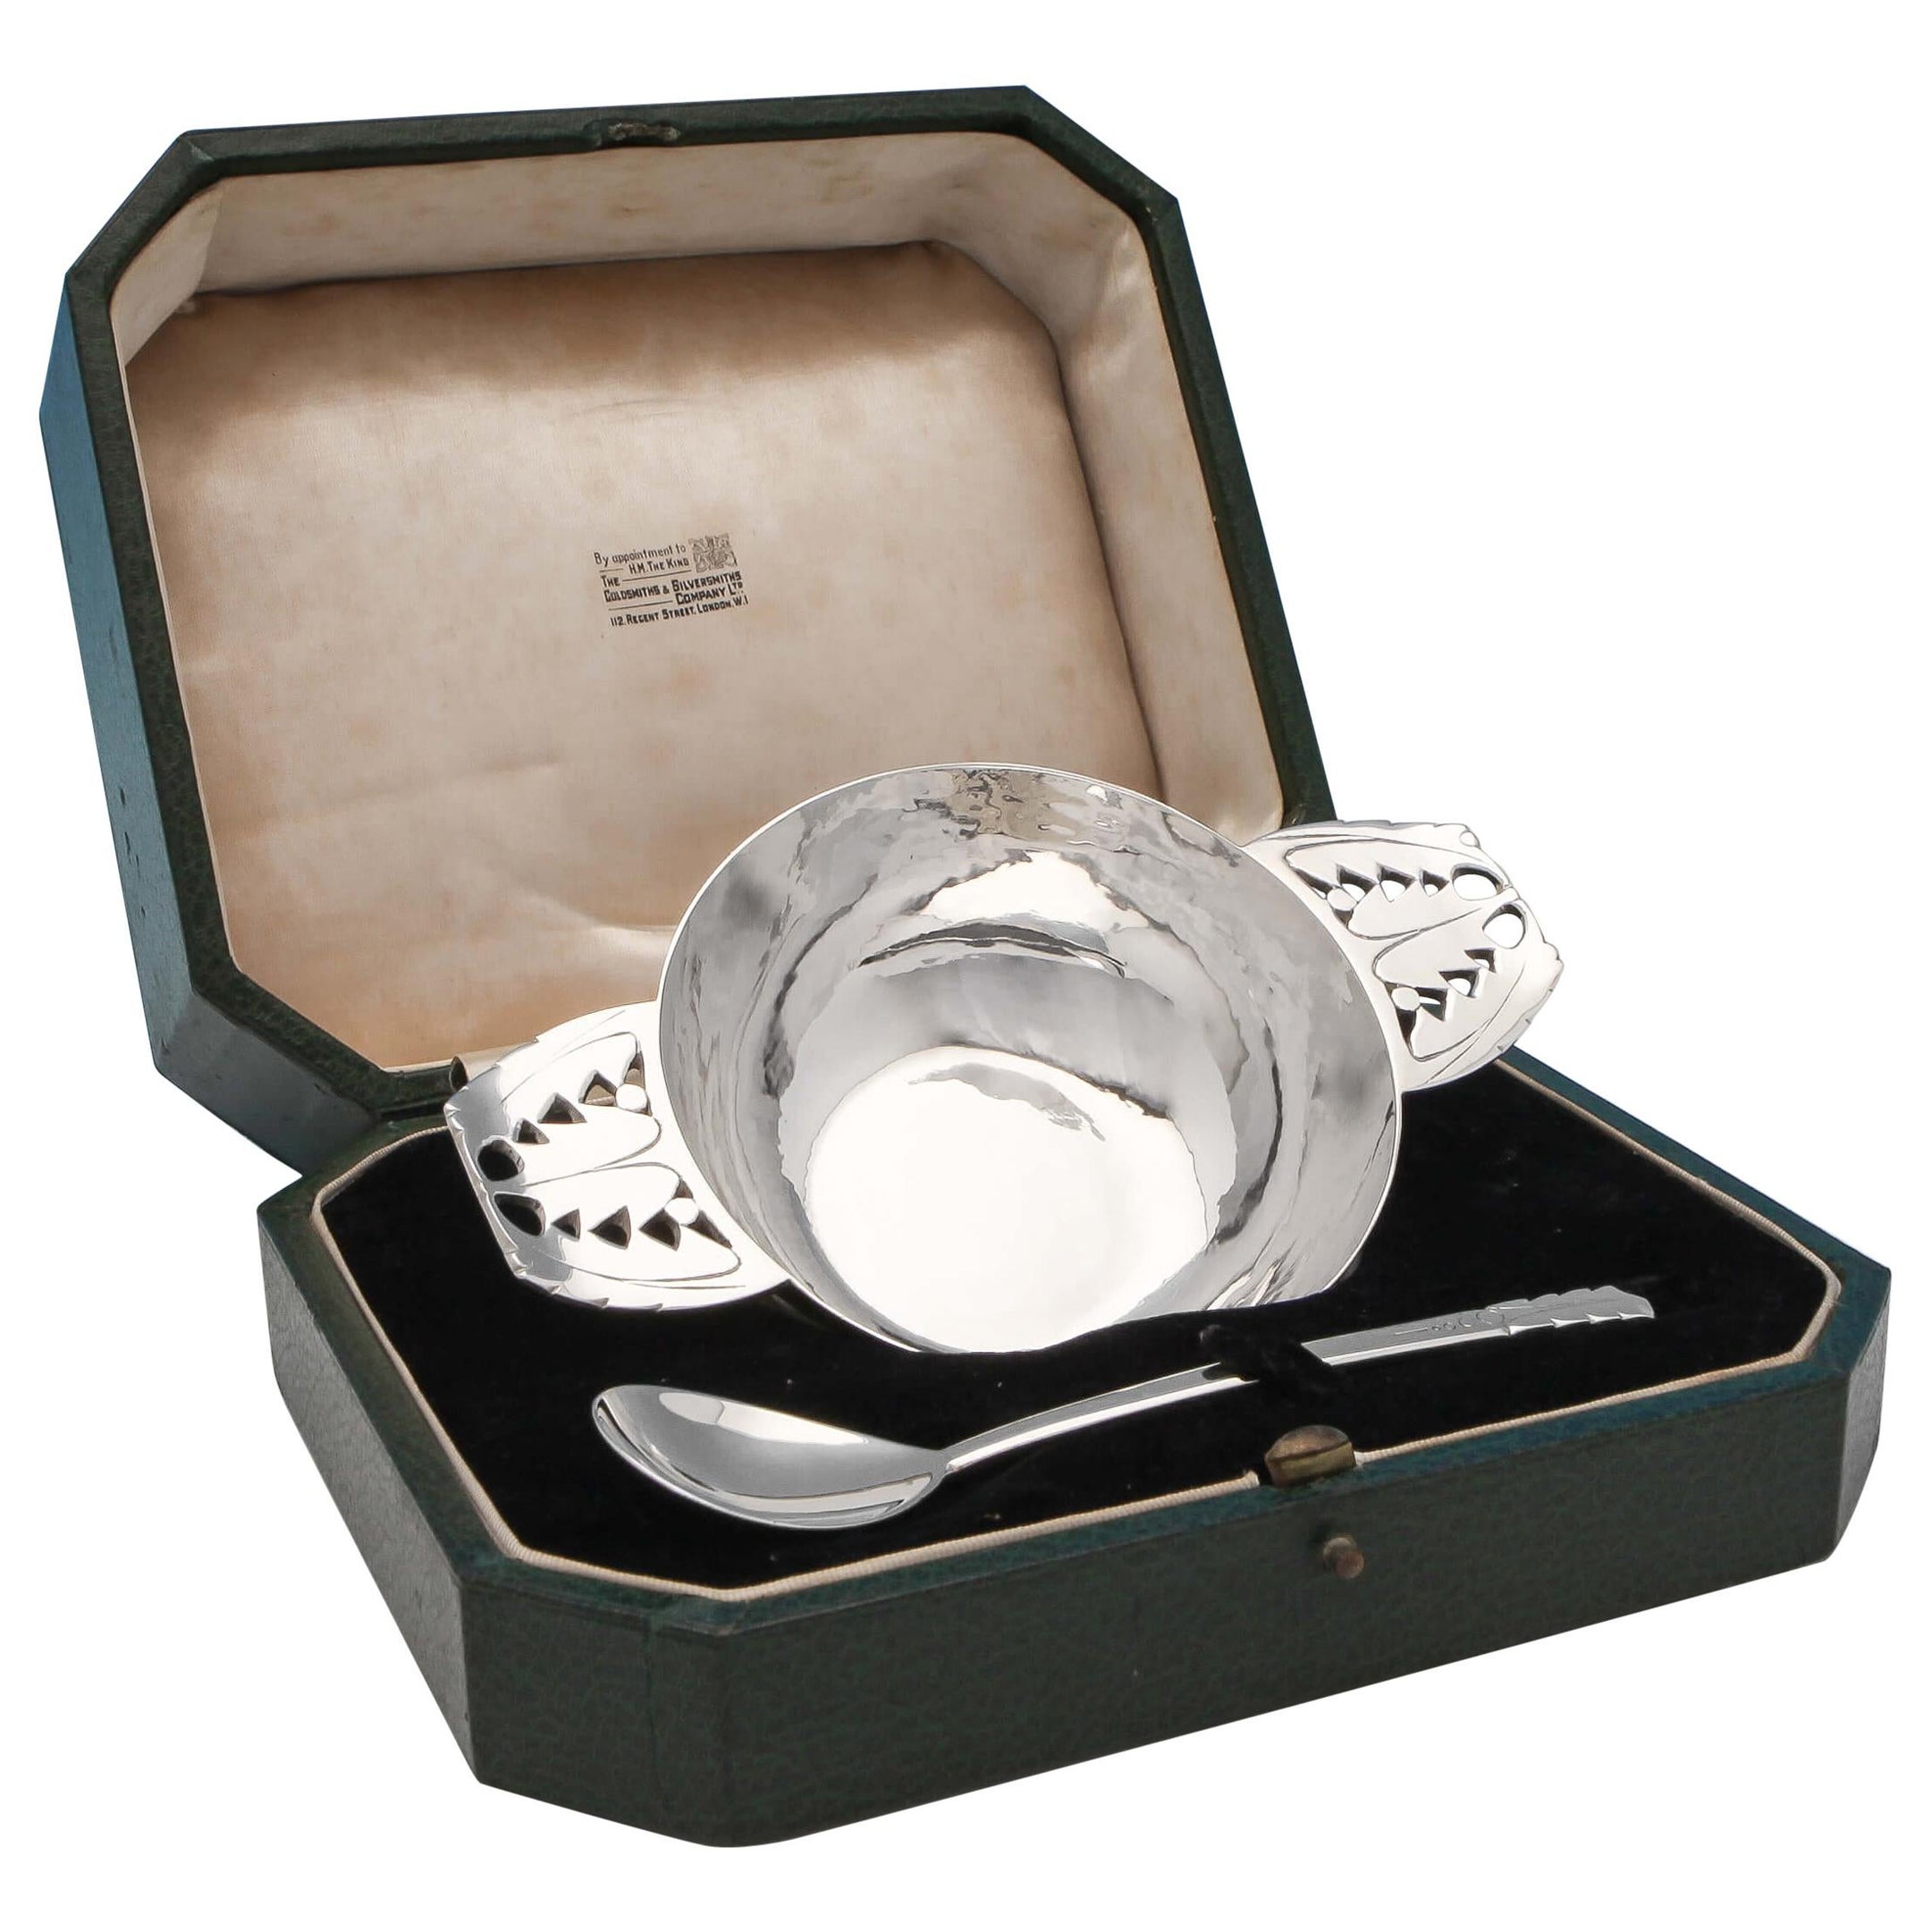 R. E. Stone - Arts & Crafts Designer Quiach & Spoon in Presentation box - 1937 For Sale